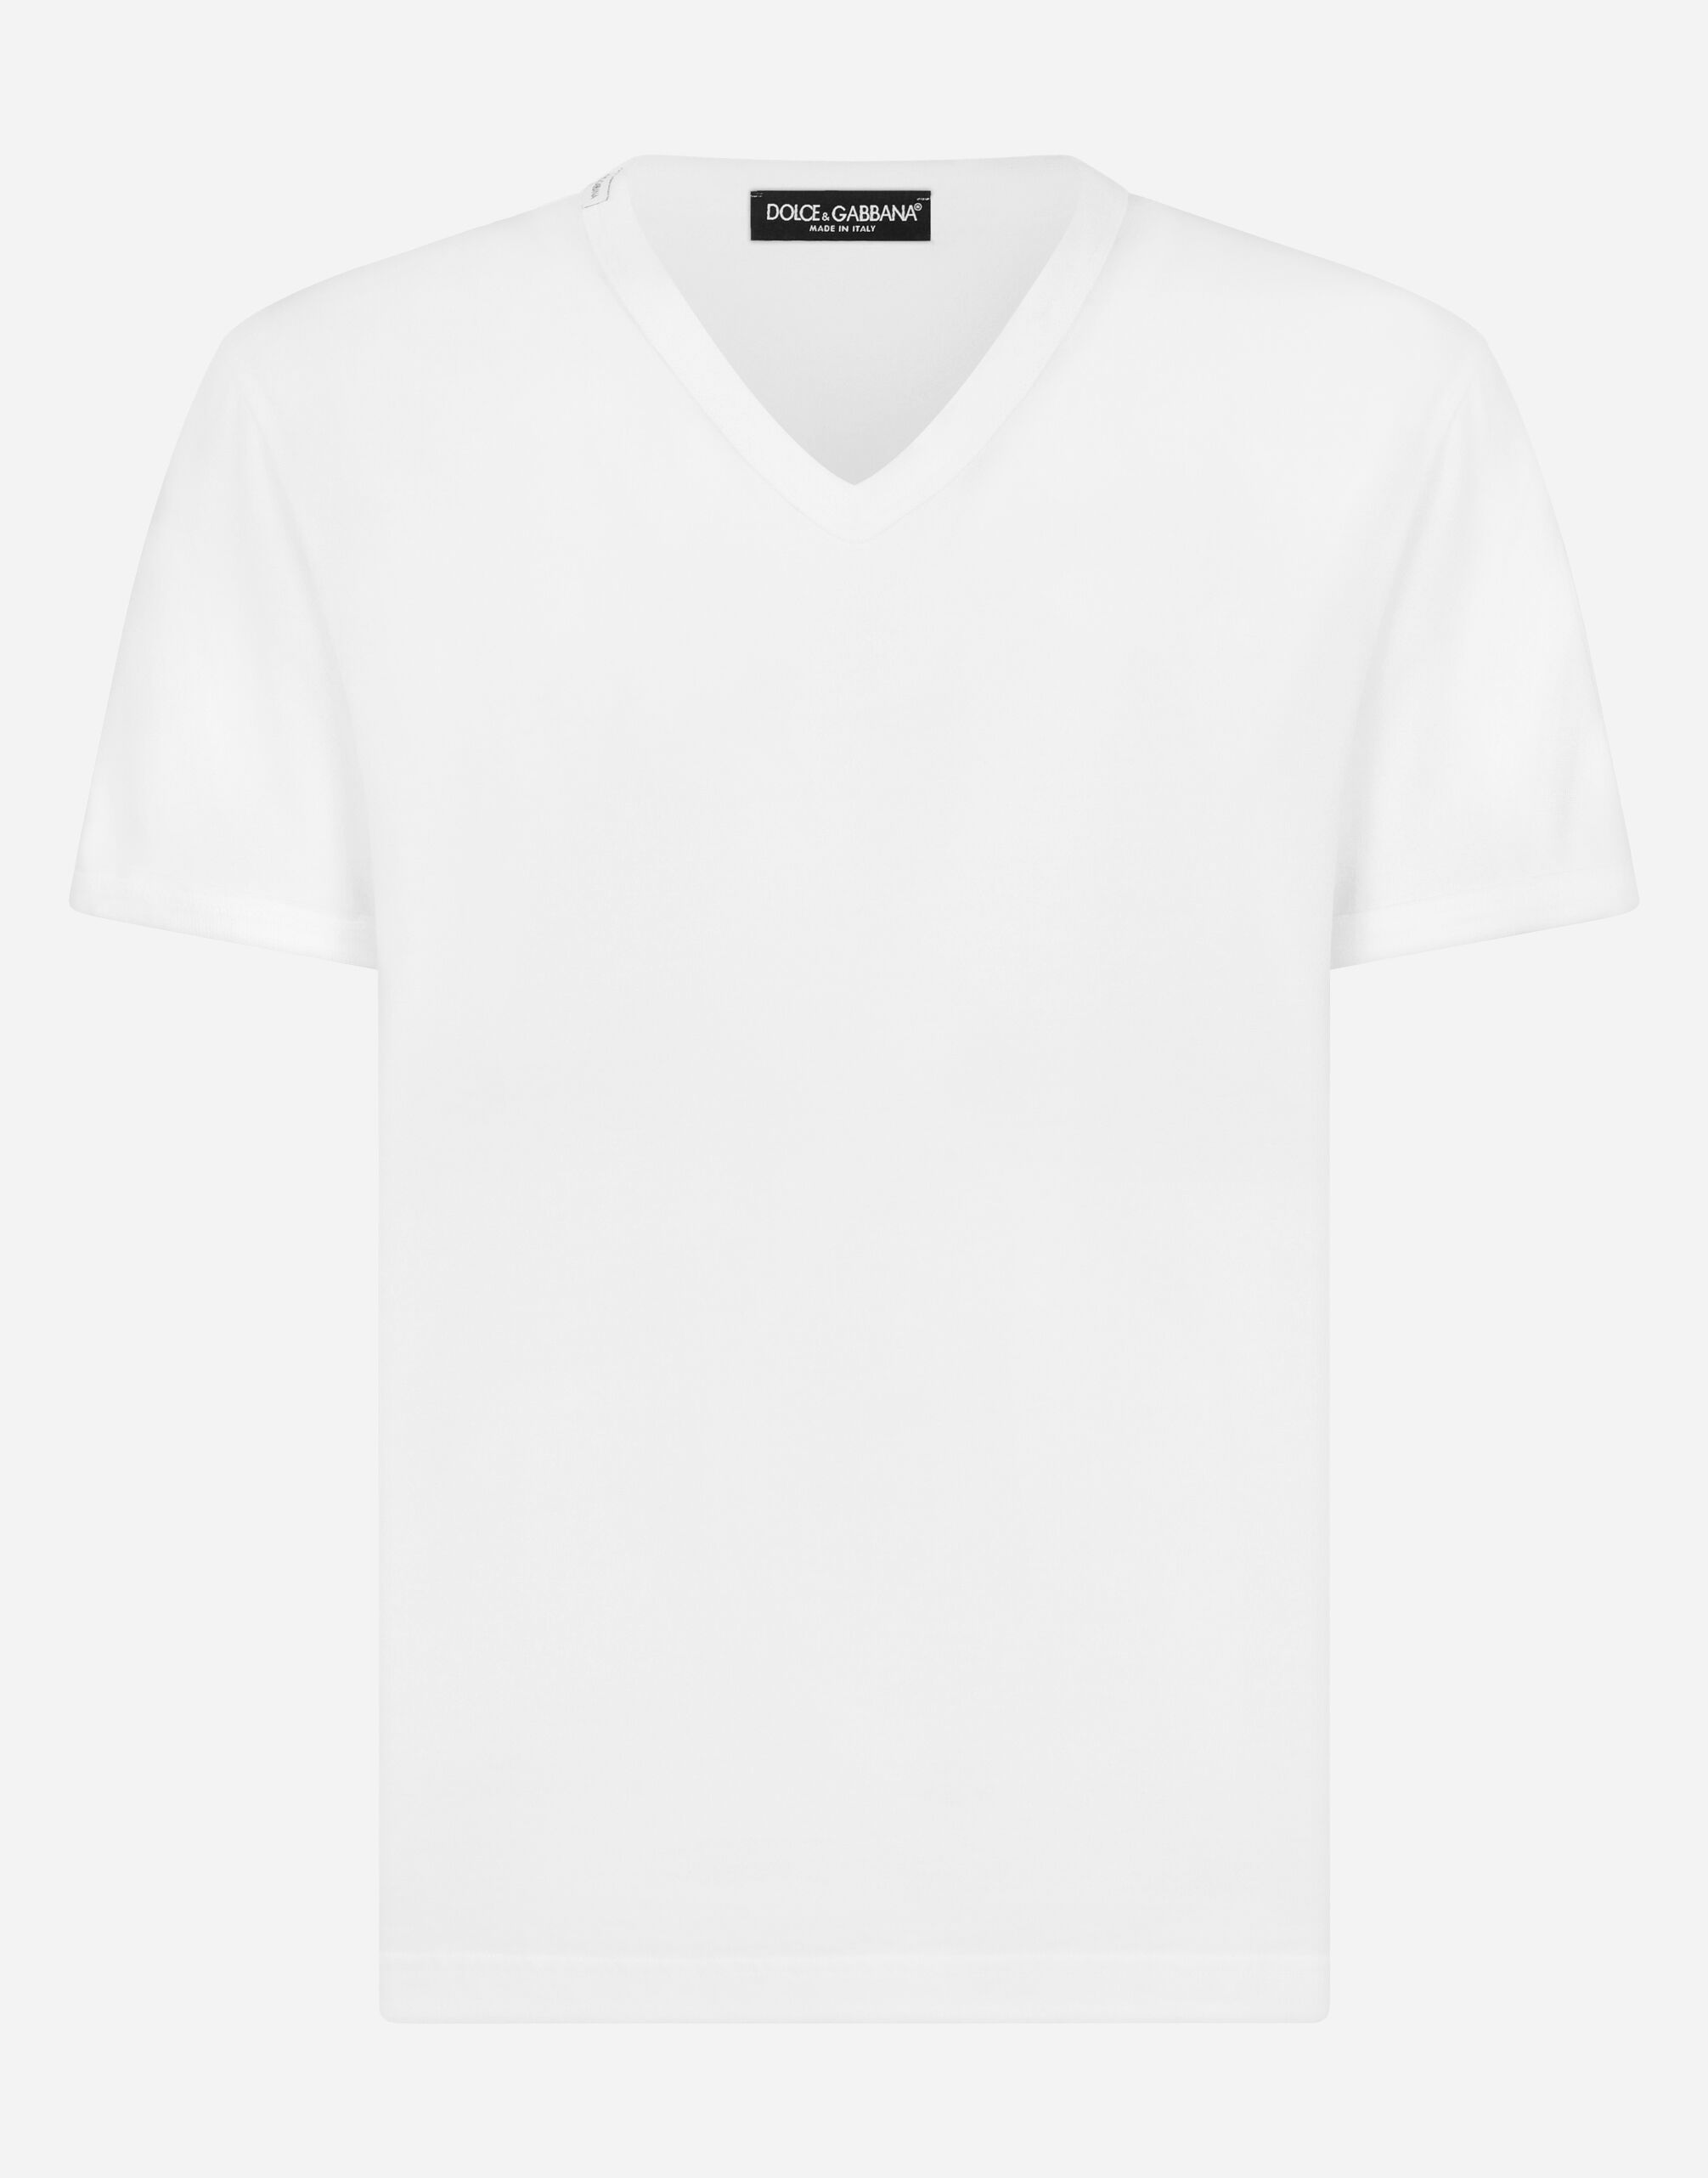 Dolce&Gabbana T-shirt aus baumwolle Schwarz GY6IETFUFJR